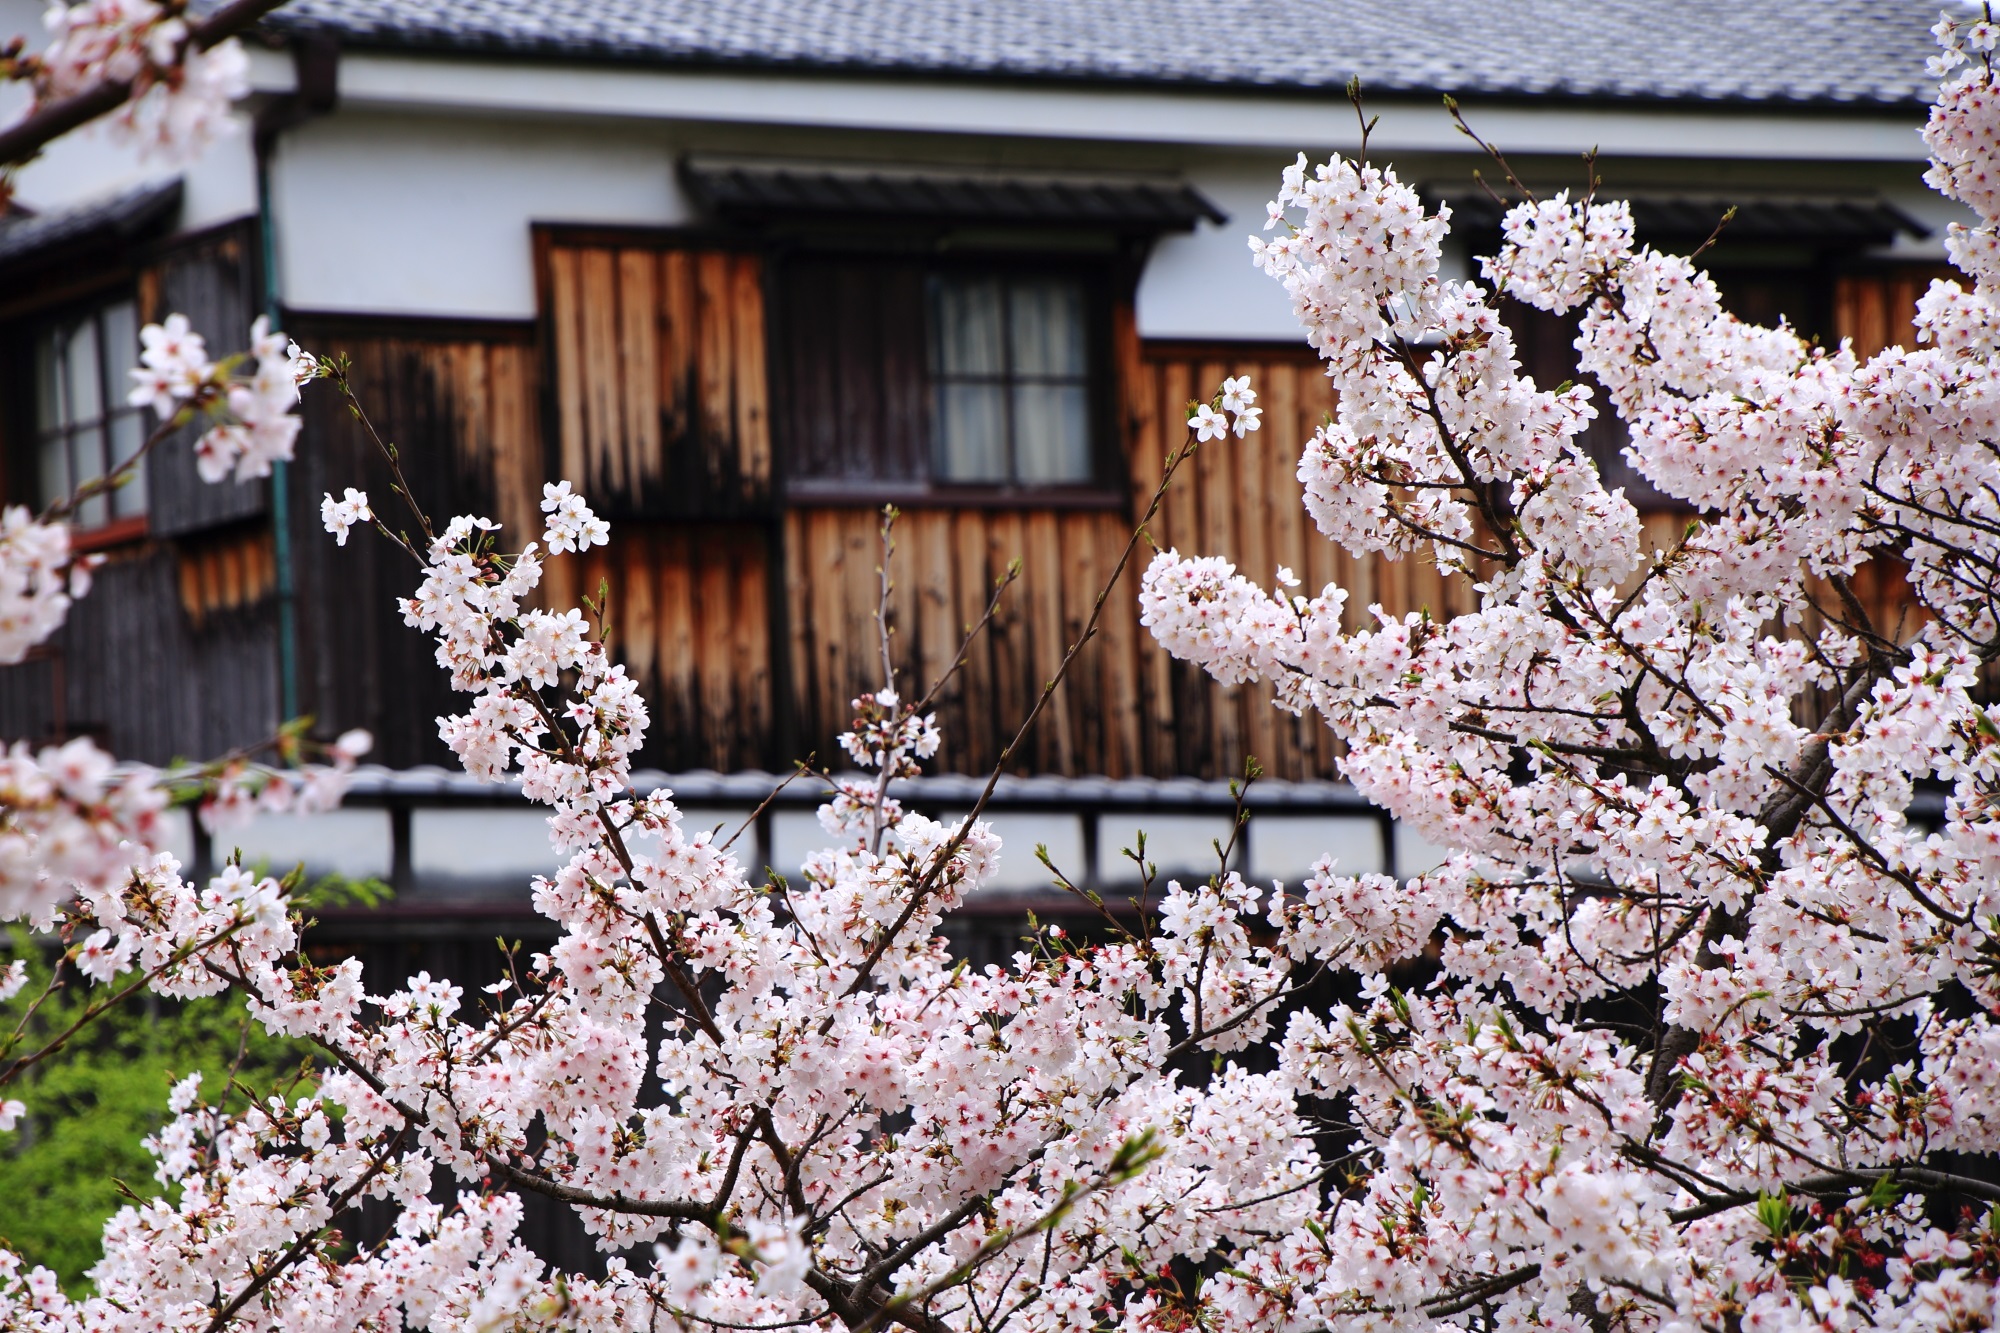 趣きある独特の雰囲気の建物に良く合う桜